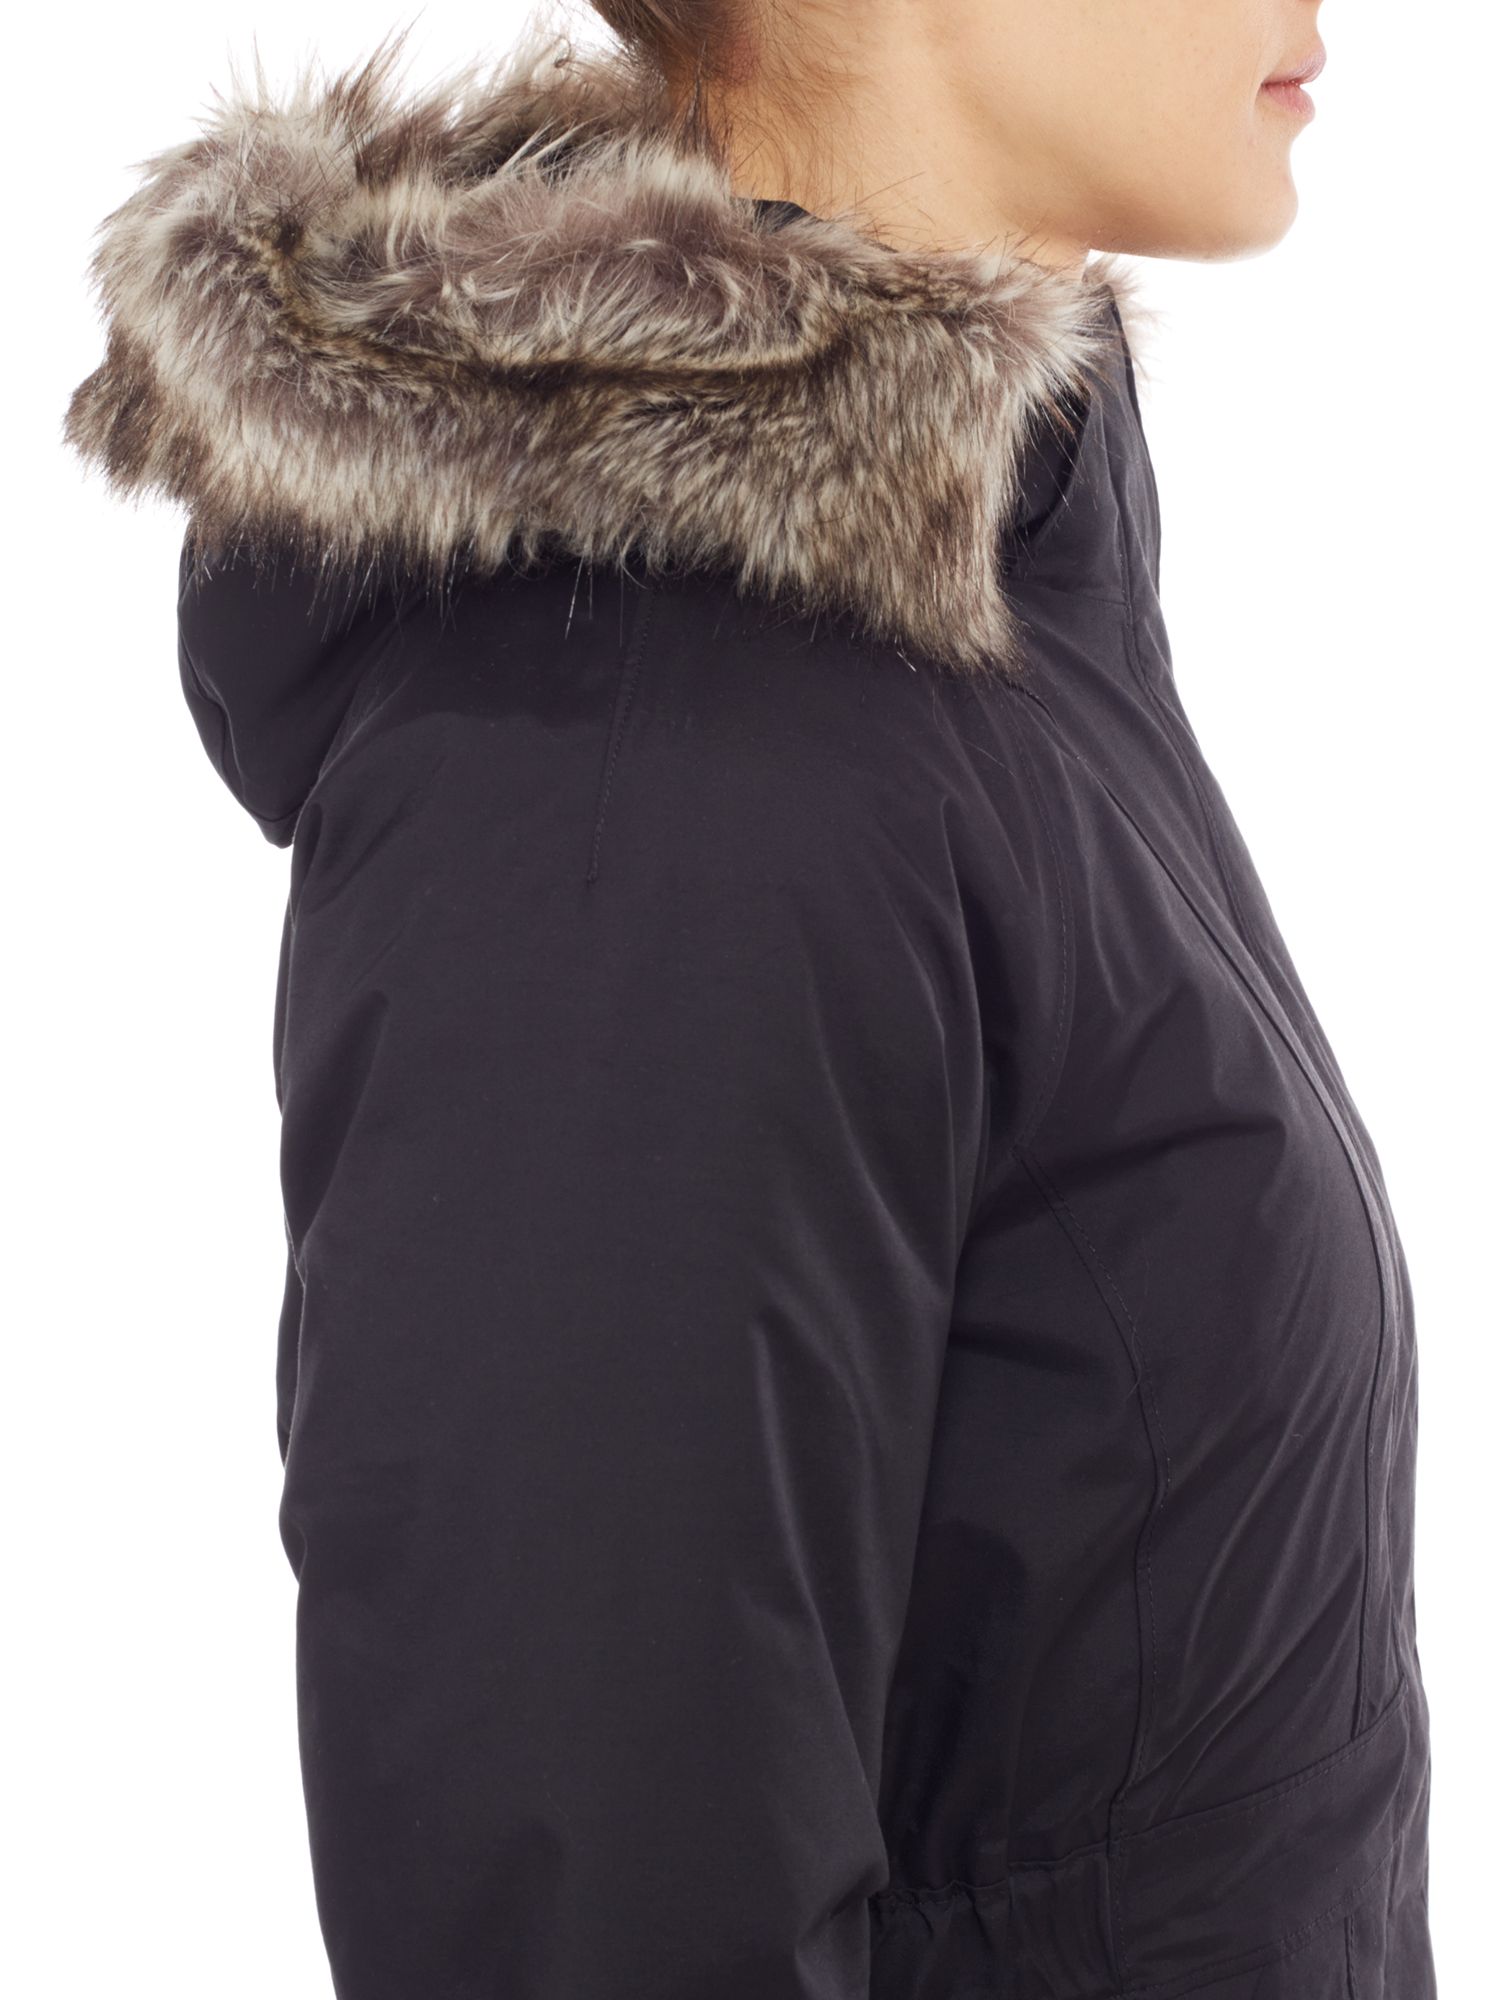 north face women's waterproof winter coat